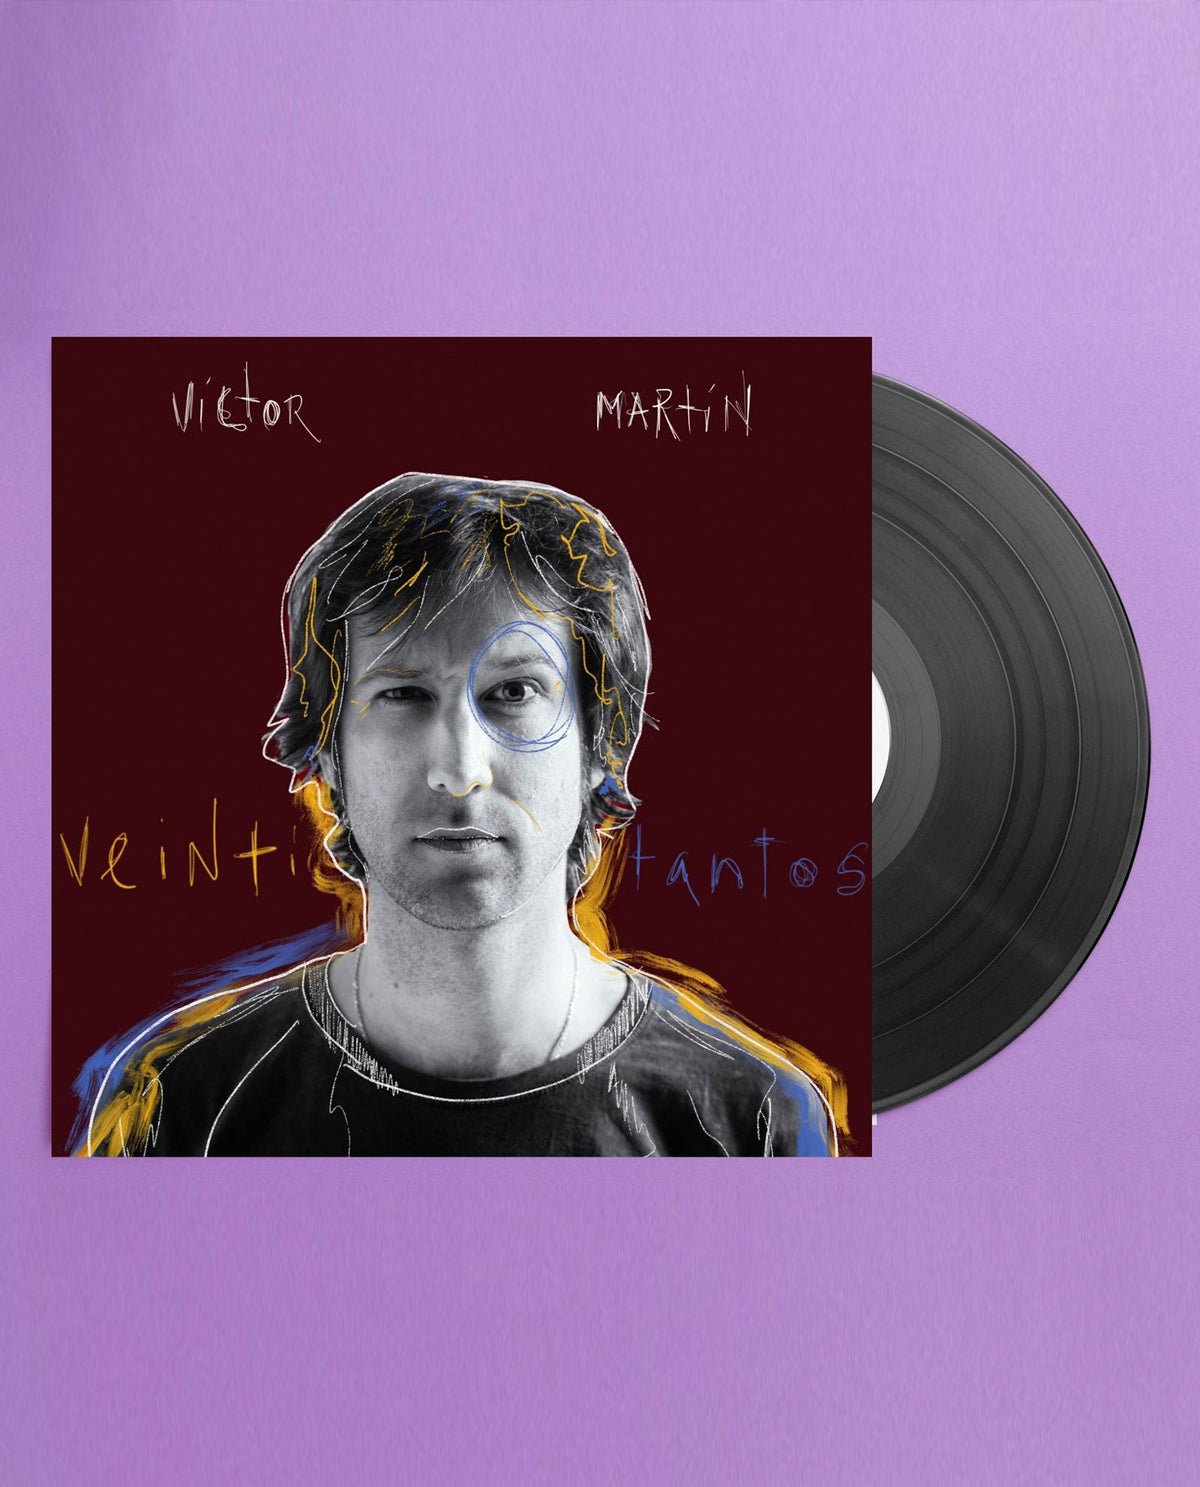 Víctor Martín - LP Vinilo + CD "Veintitantos" - D2fy · Rocktud - Metales Preciosos